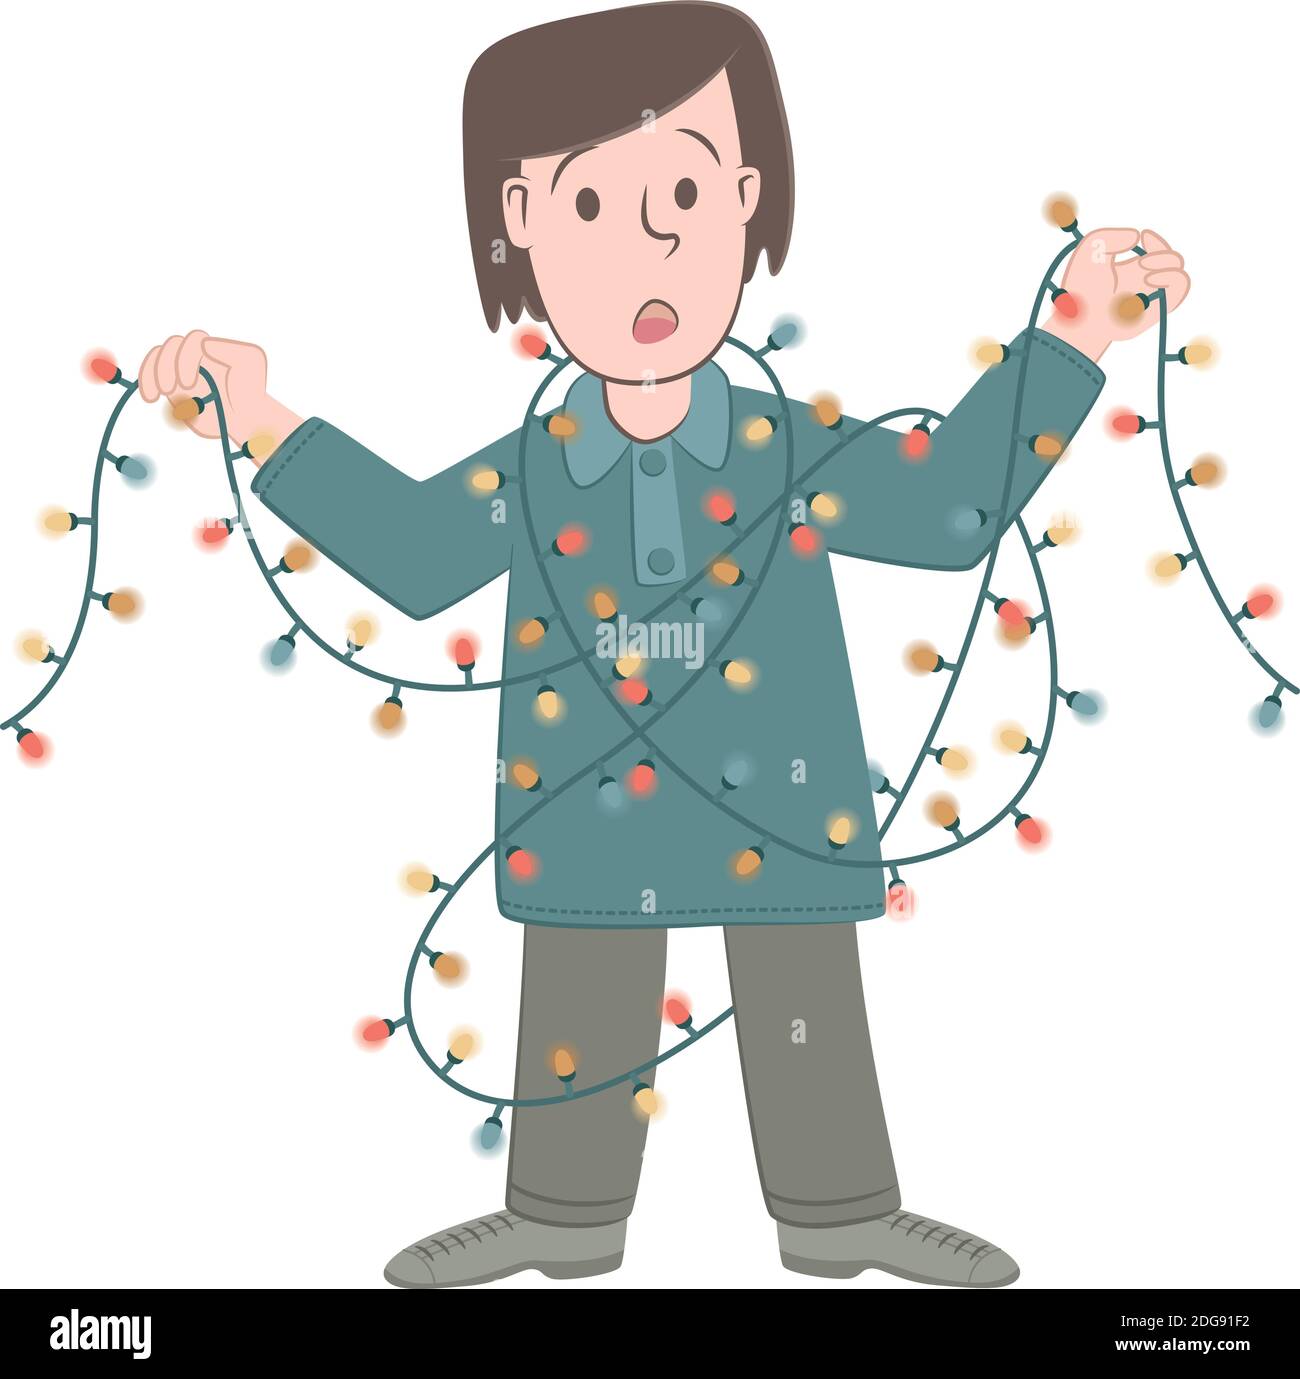 Retro-Stil Illustration eines Jungen, der mit Weihnachtsbeleuchtung verwickelt geworden ist. Stock Vektor